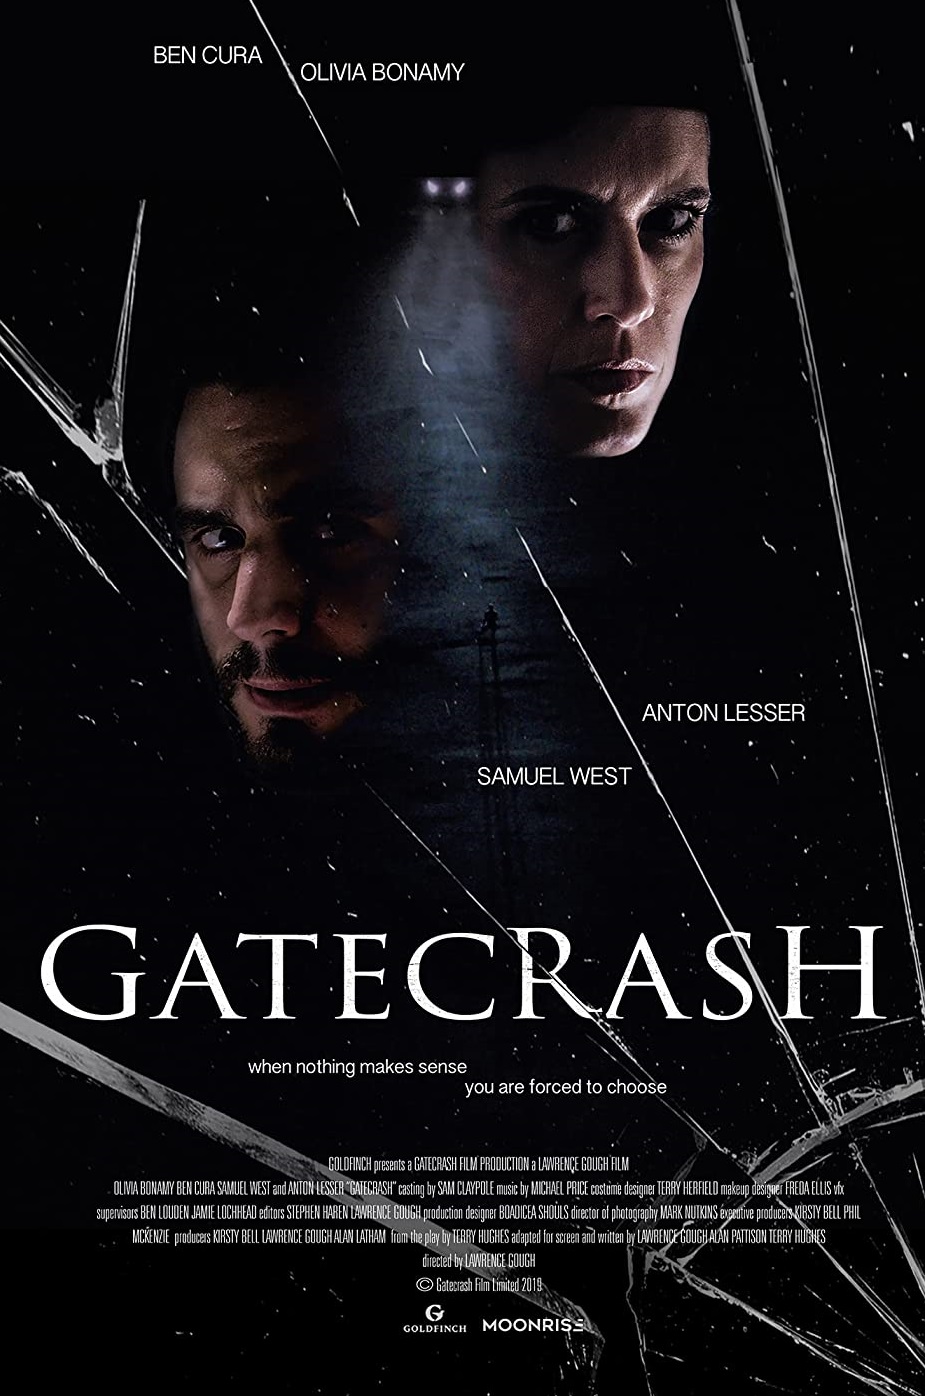 Gatecrash 2020 Tamil Dubbed Thriller Movie Online